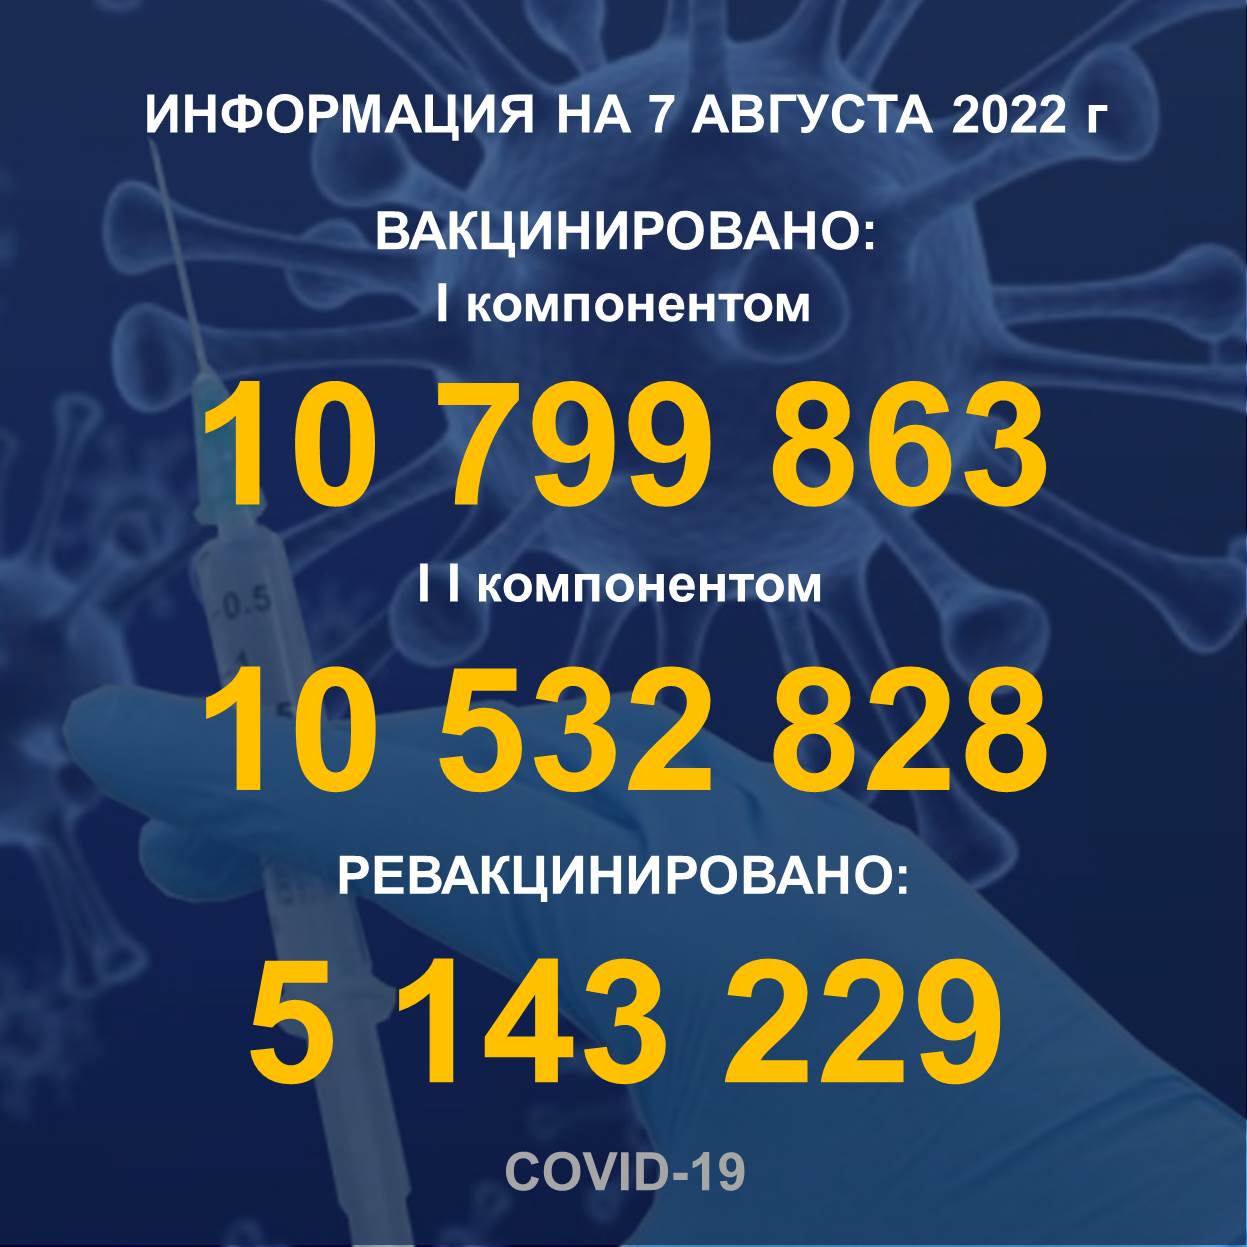 I компонентом 10 799 863 еловек провакцинировано в Казахстане на 7.08.2022 г, II компонентом 10 532 828 человек. Ревакцинировано – 5 143 229